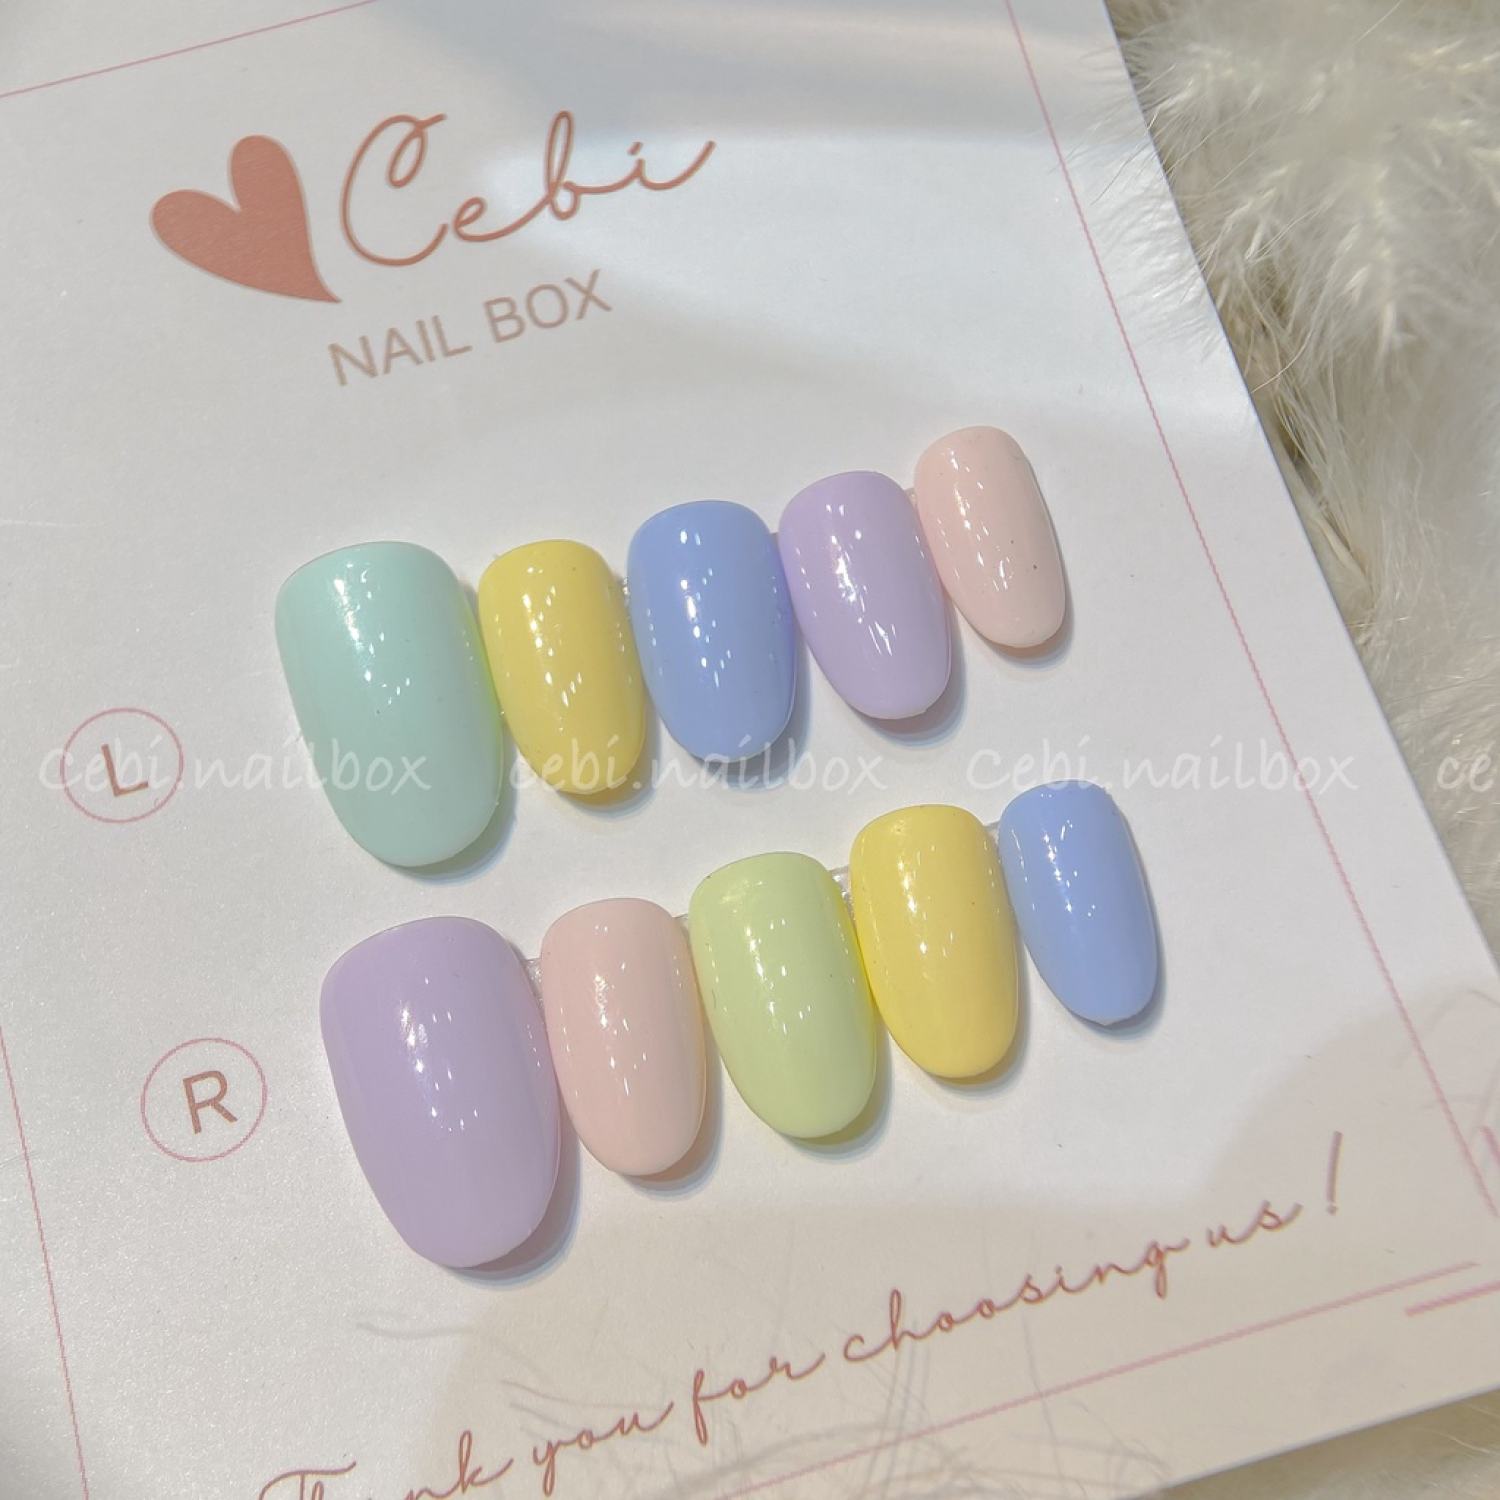 Nail Box Móng up thiết kế Hàn Quốc sắc màu pastel nhẹ nhàng Làm theo số đo  và mẫu yêu cầu hoặc mẫu có sẵn | Lazada.vn